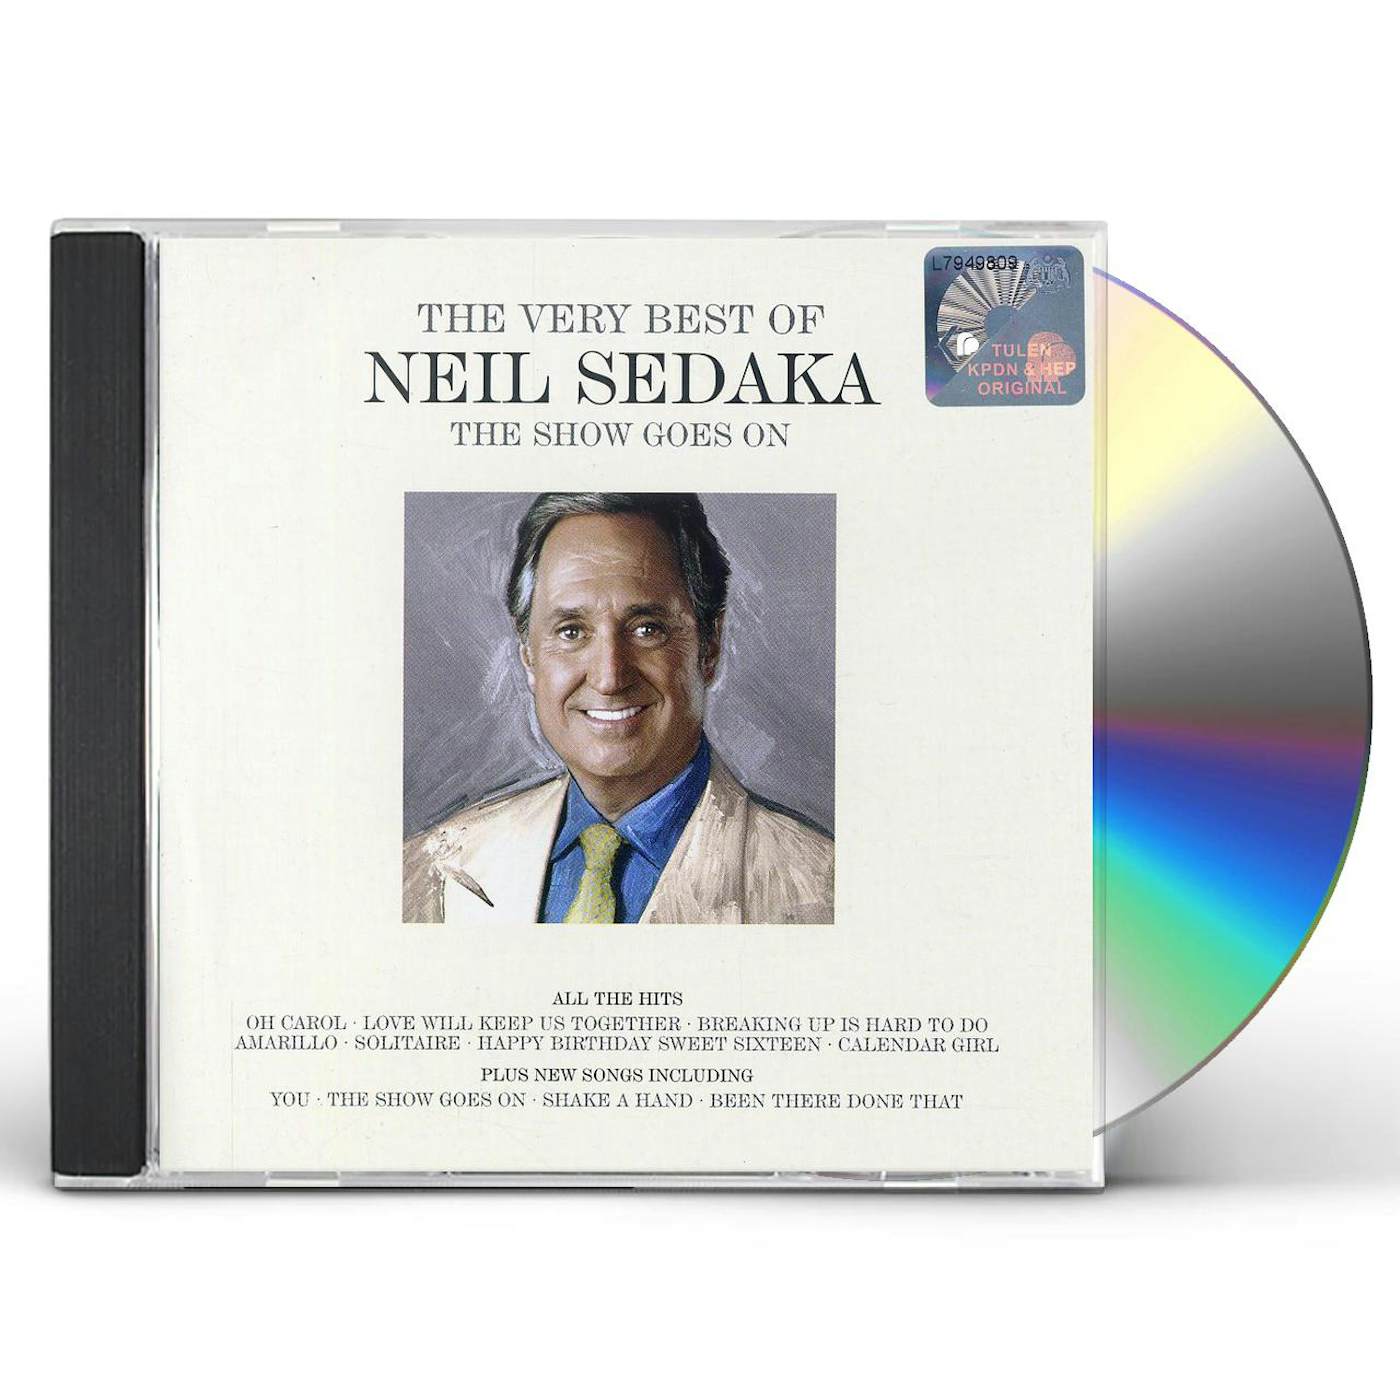 SHOW GOES ON: THE VERY BEST OF NEIL SEDAKA CD - UK Release